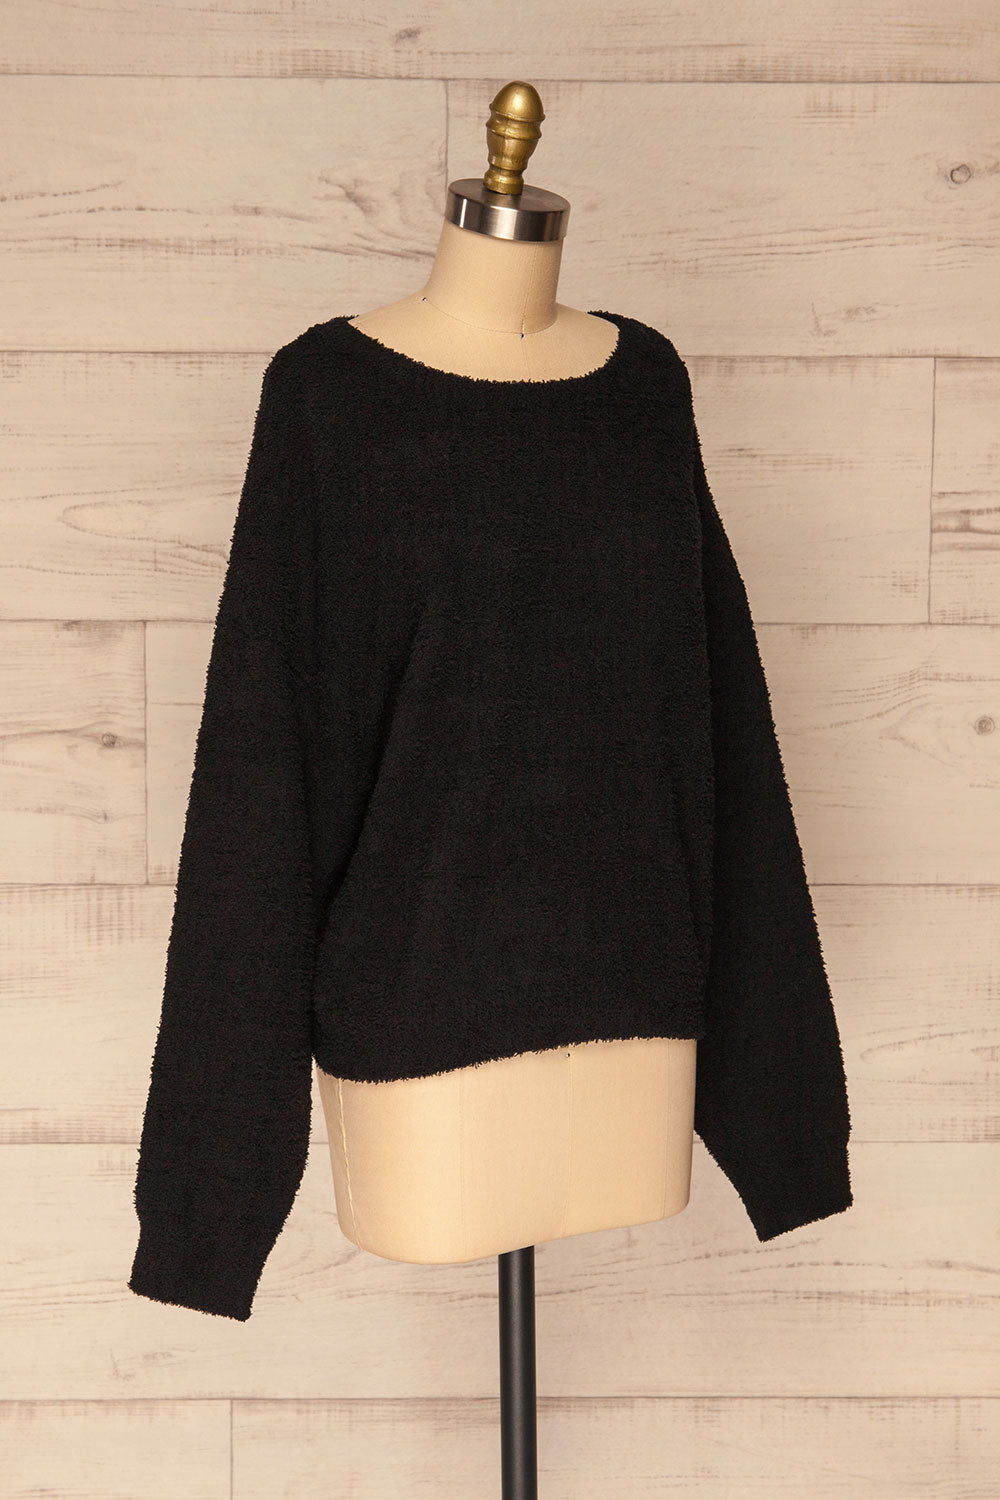 Hult Black Fuzzy Long Sleeve Sweater | La petite garçonne side view 